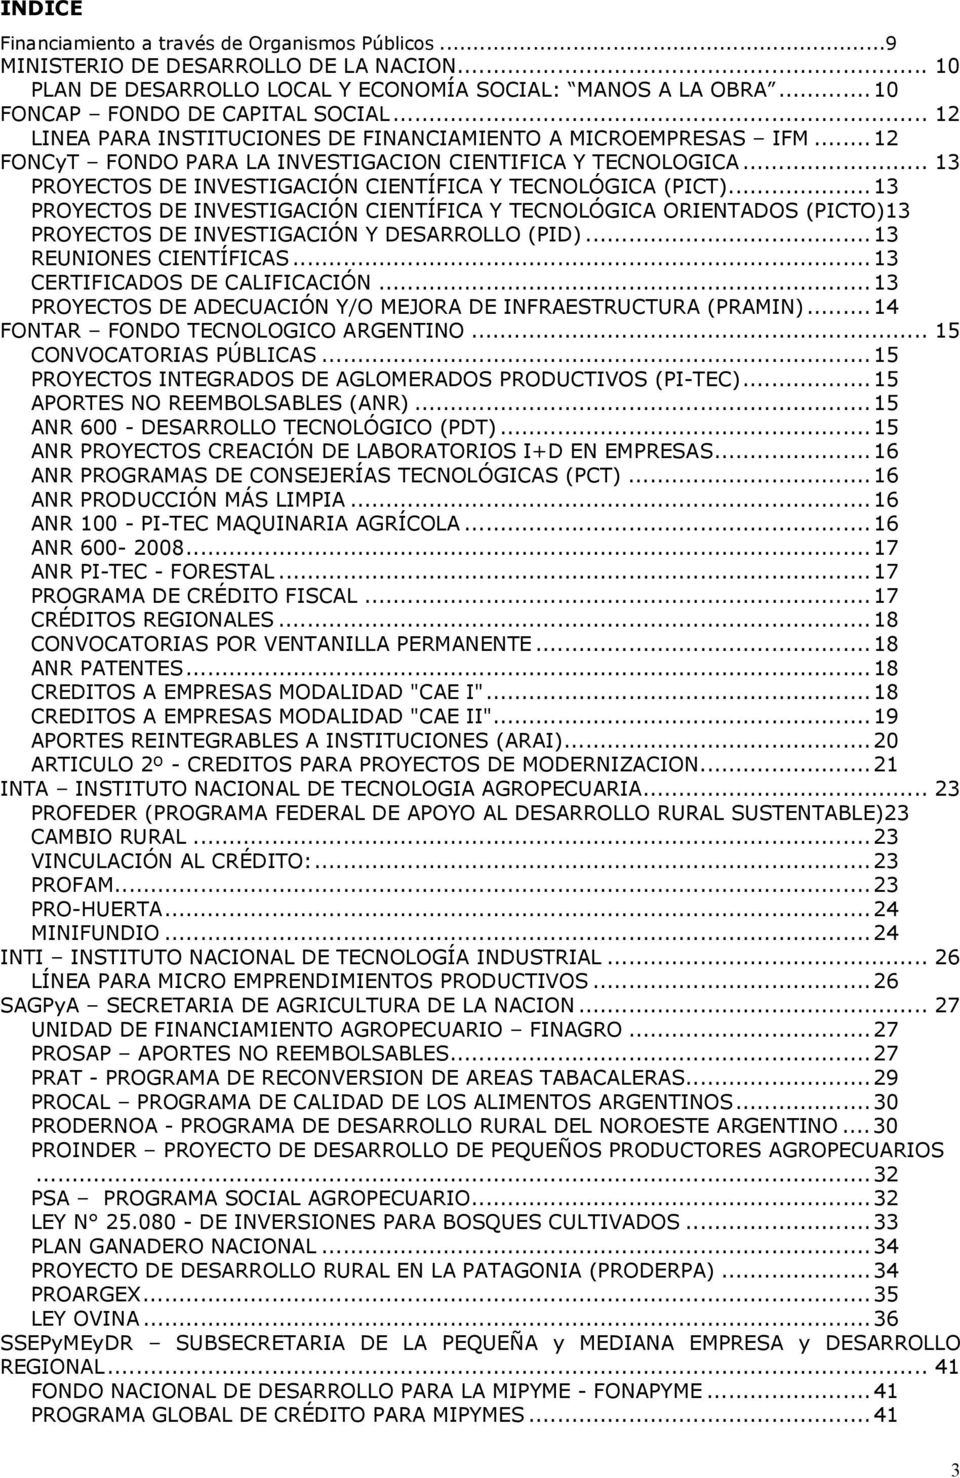 ..13 PROYECTOS DE INVESTIGACIÓN CIENTÍFICA Y TECNOLÓGICA ORIENTADOS (PICTO)13 PROYECTOS DE INVESTIGACIÓN Y DESARROLLO (PID)...13 REUNIONES CIENTÍFICAS...13 CERTIFICADOS DE CALIFICACIÓN.